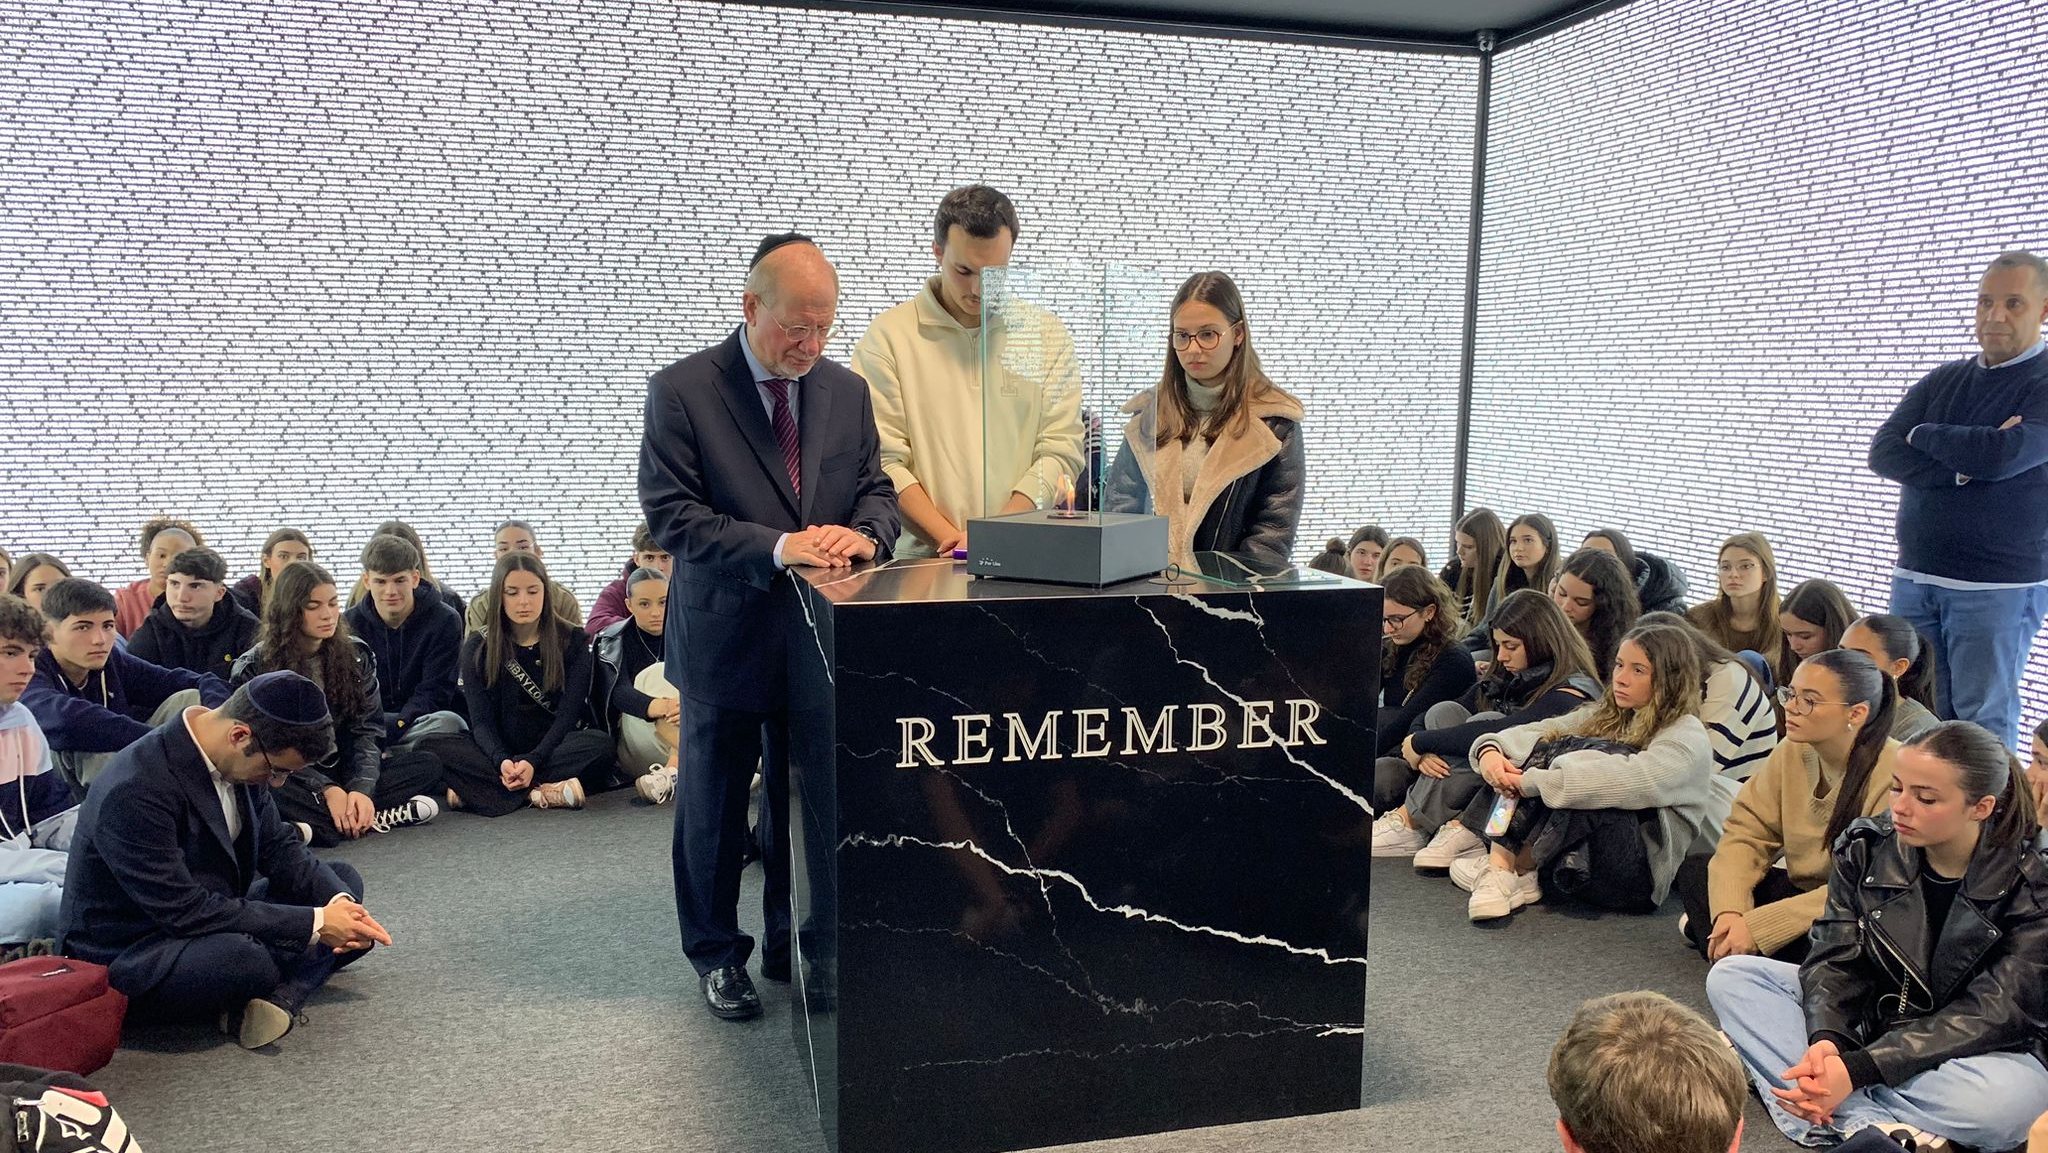 Momento em que se acendeu a chama na sala da memória. Nas paredes, estão escritos os nomes de 30 mil vítimas, incluindo Anne Frank